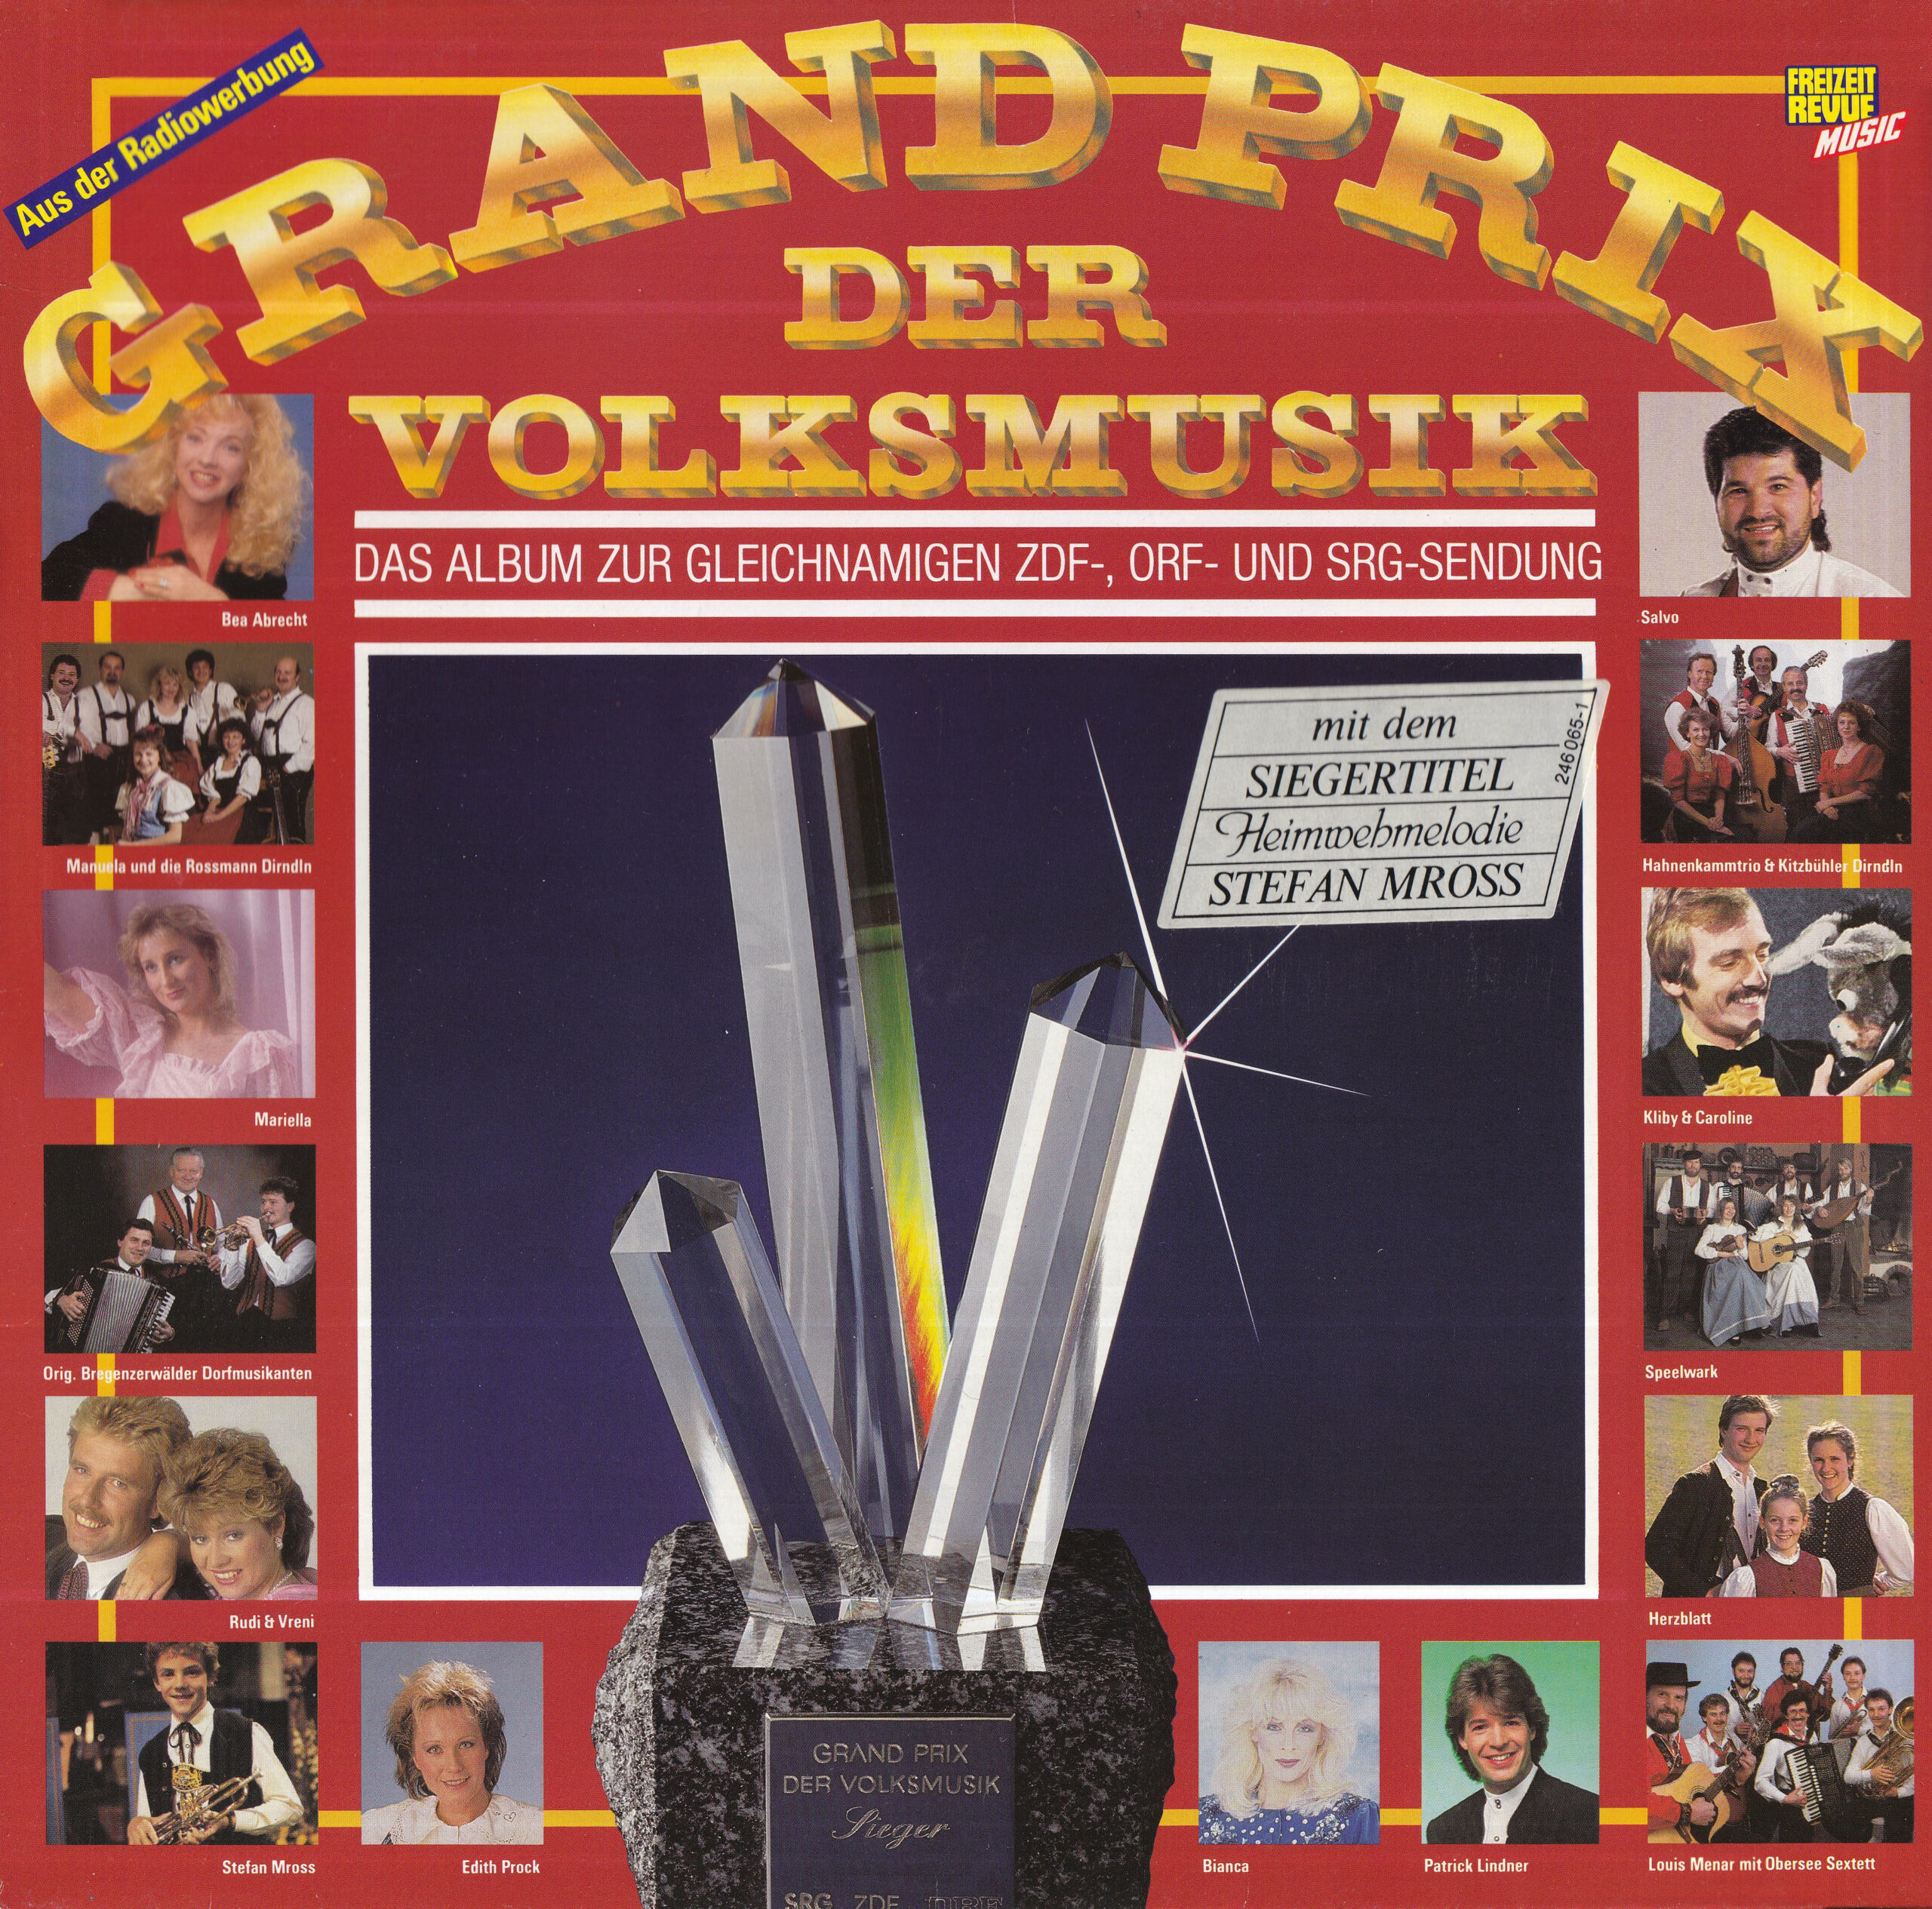 Grand Prix der Volksmusik 1989 – 1